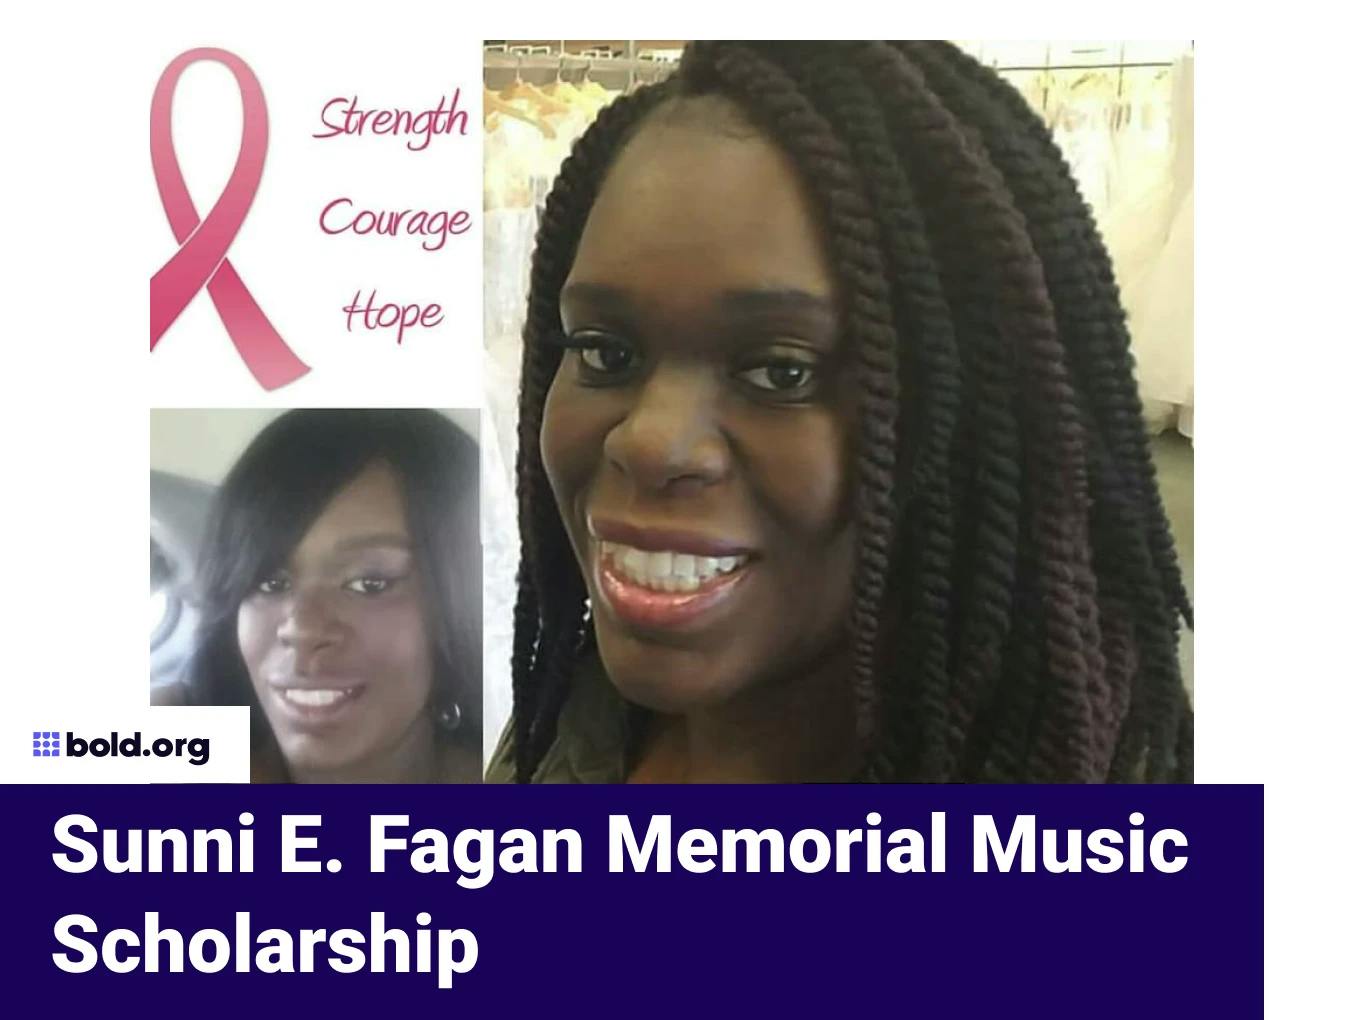 Sunni E. Fagan Memorial Music Scholarship